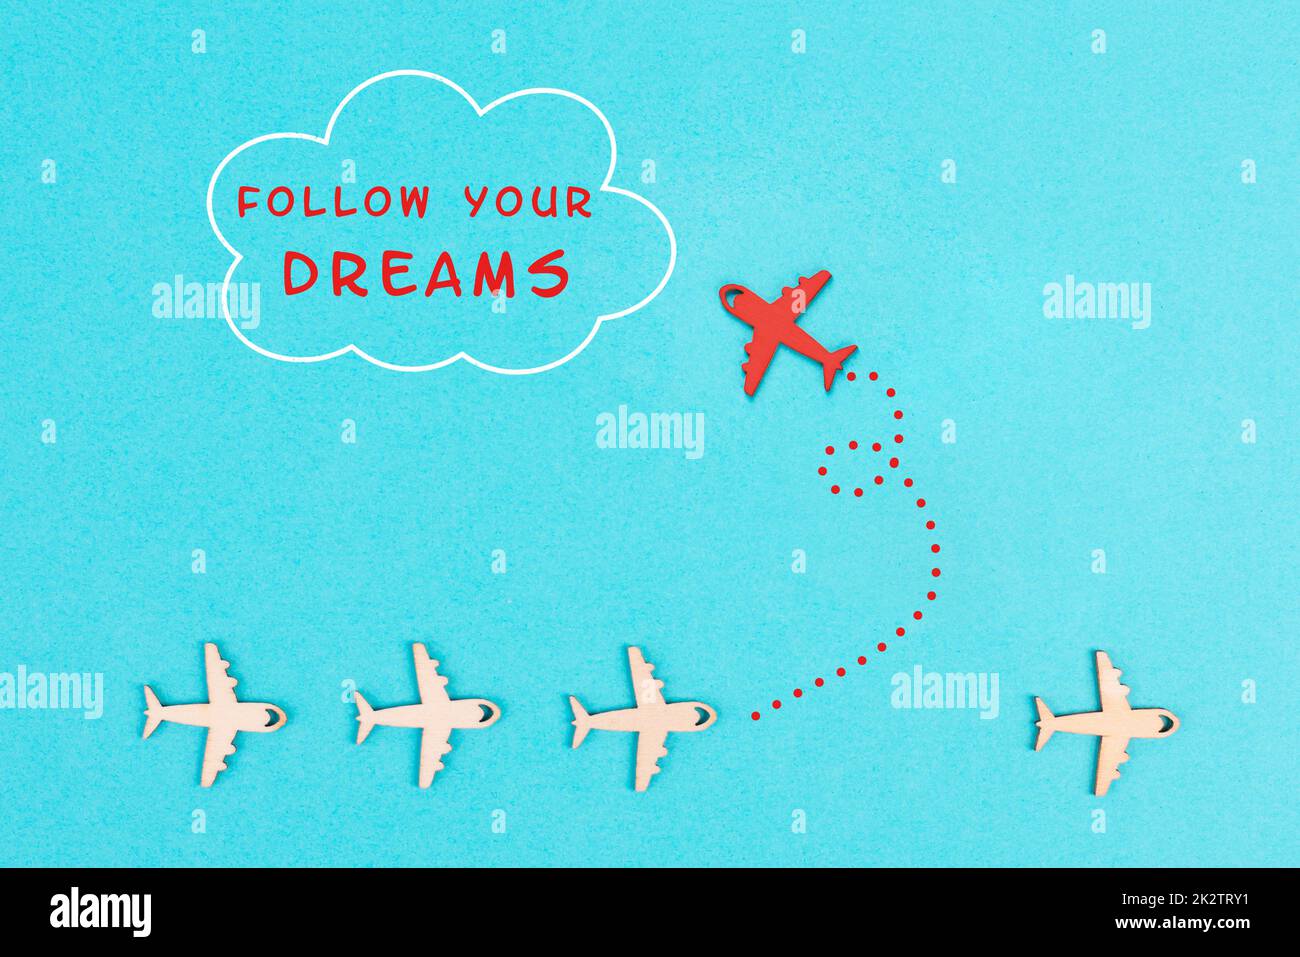 Red Airplanes prend une direction différente, volant vers le nuage avec l'expression suivre vos rêves, la motivation et le concept de coaching, la pensée positive, ayant un objectif, l'état d'esprit de la liberté Banque D'Images